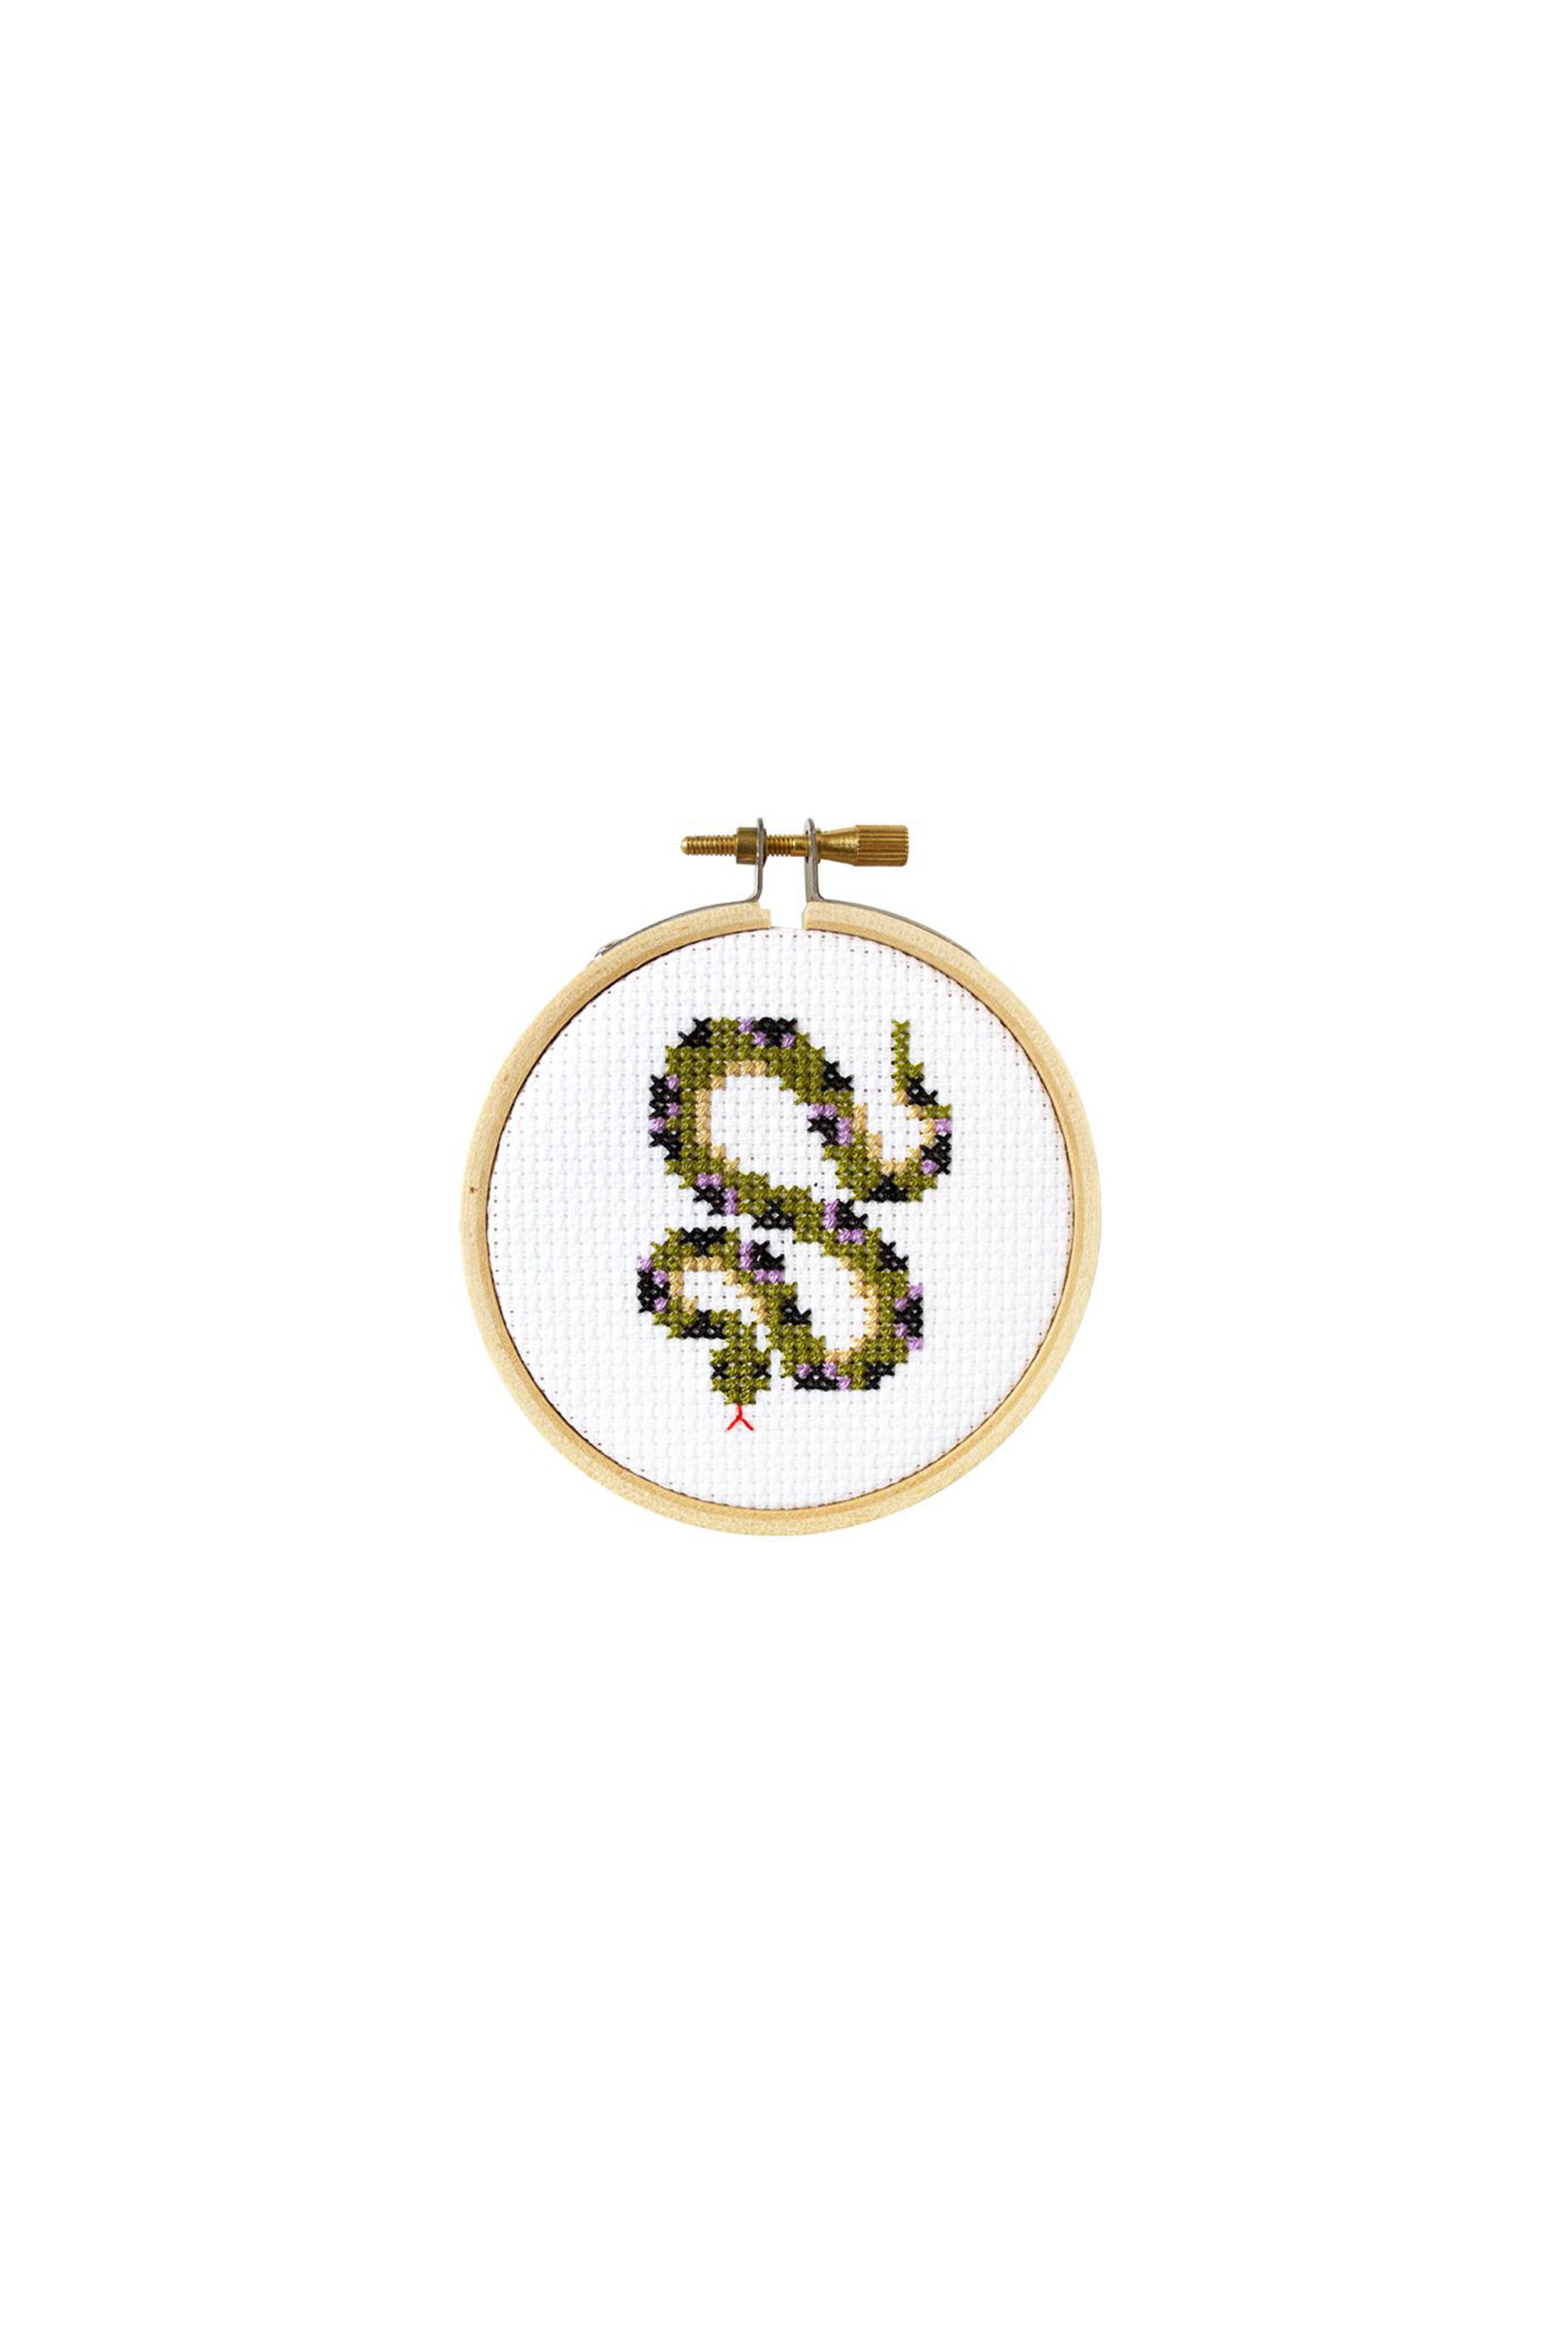 Snake DIY Cross Stitch Kit